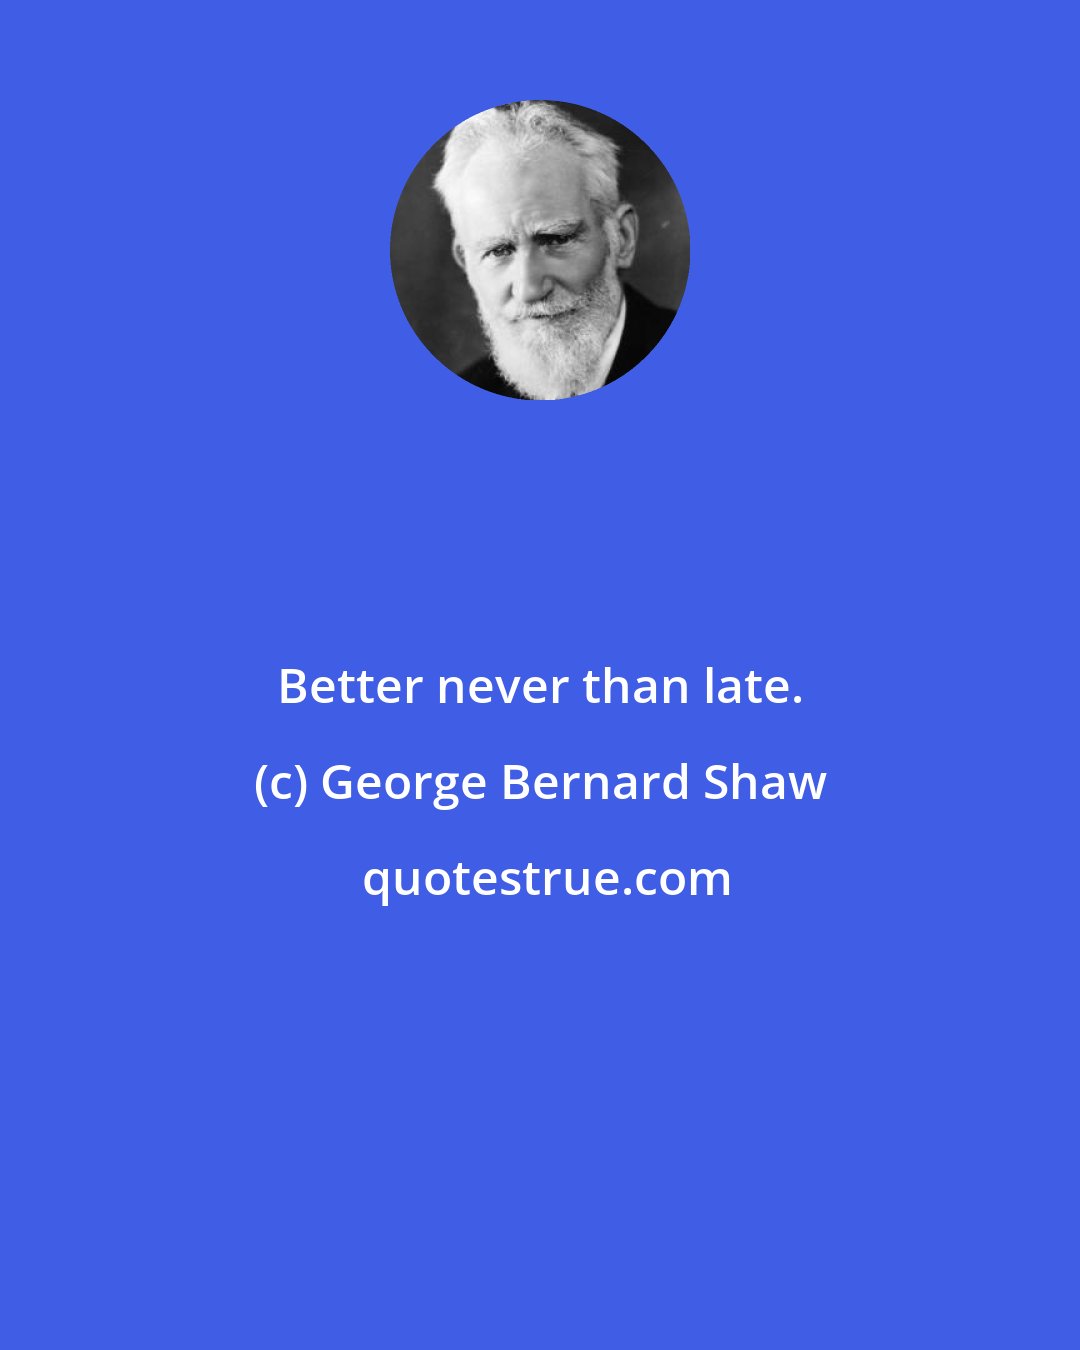 George Bernard Shaw: Better never than late.